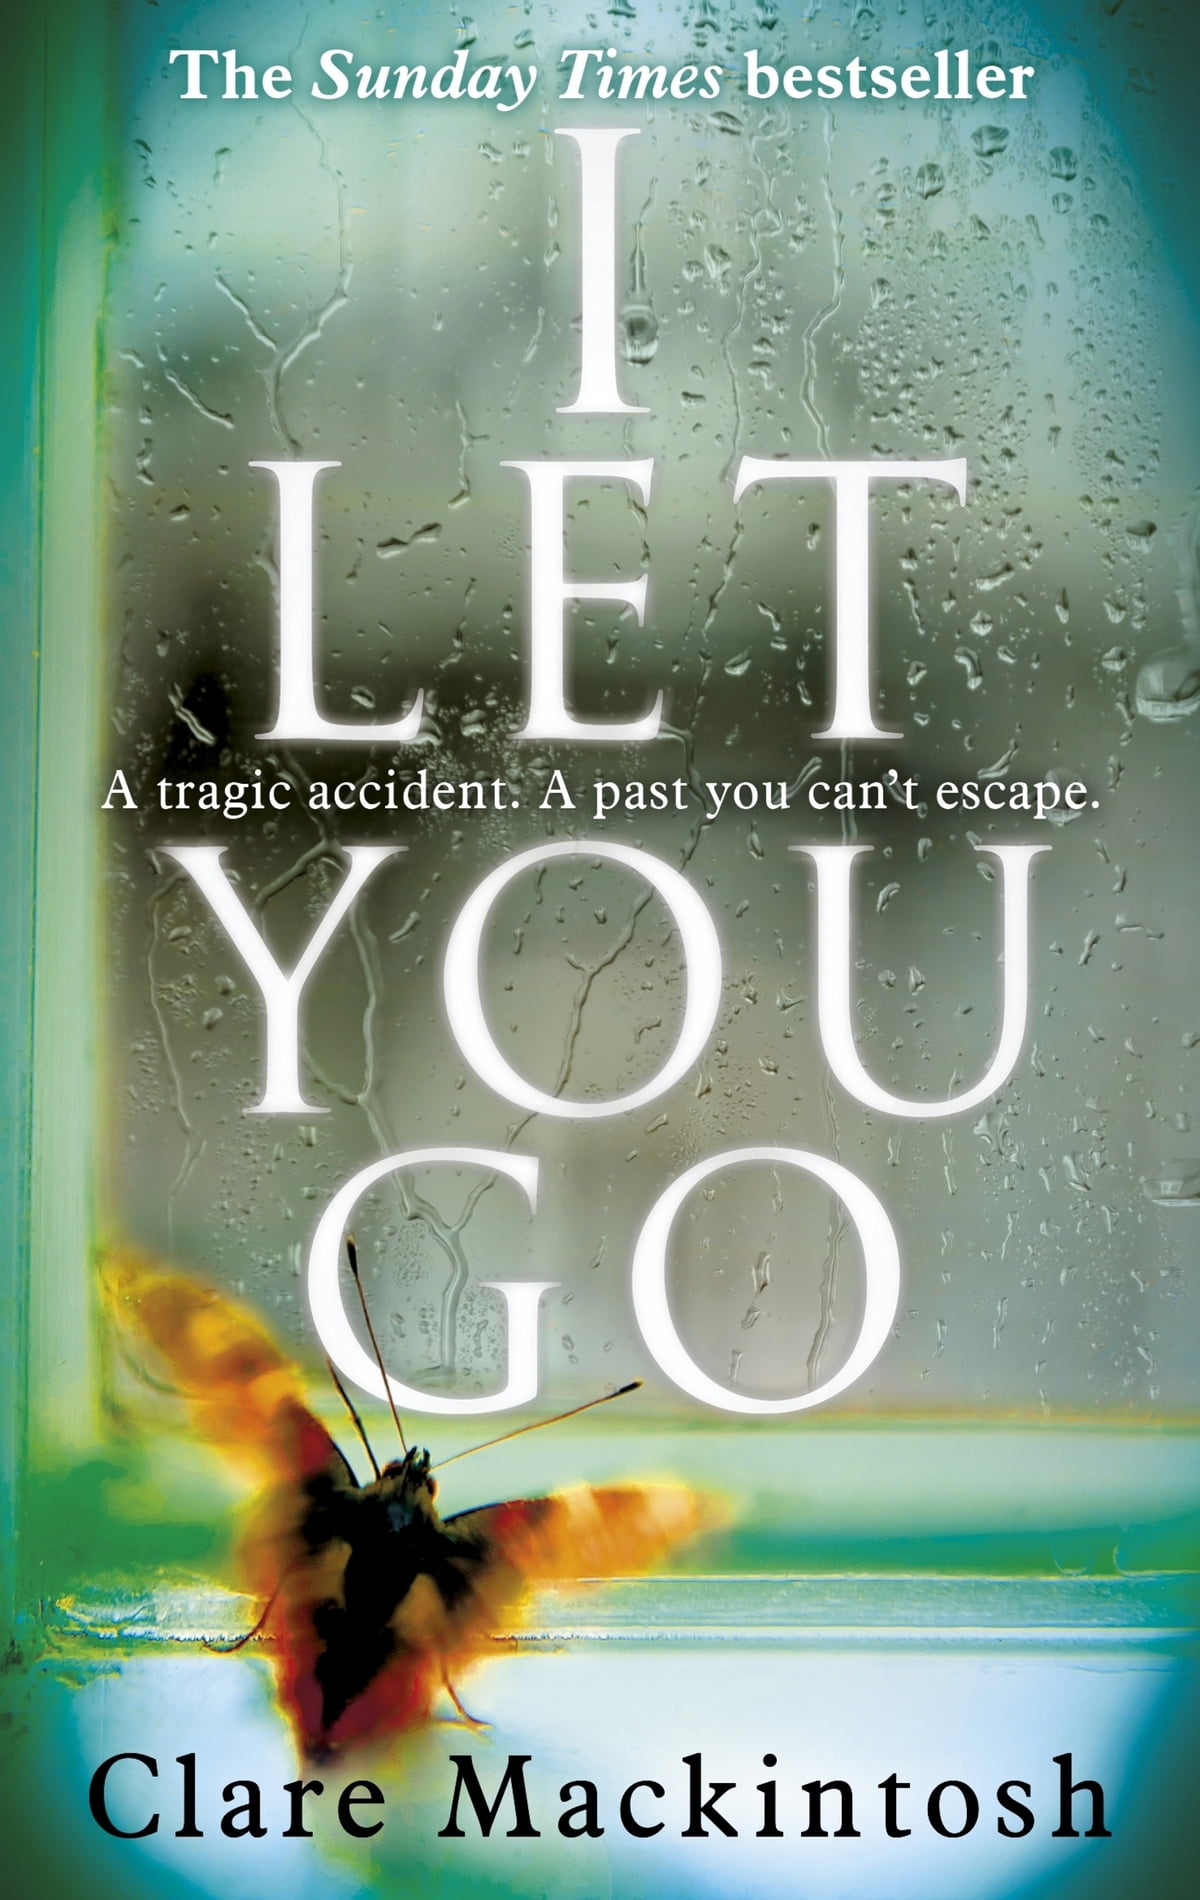 Clare Mackintosh: I Let You Go (2016)